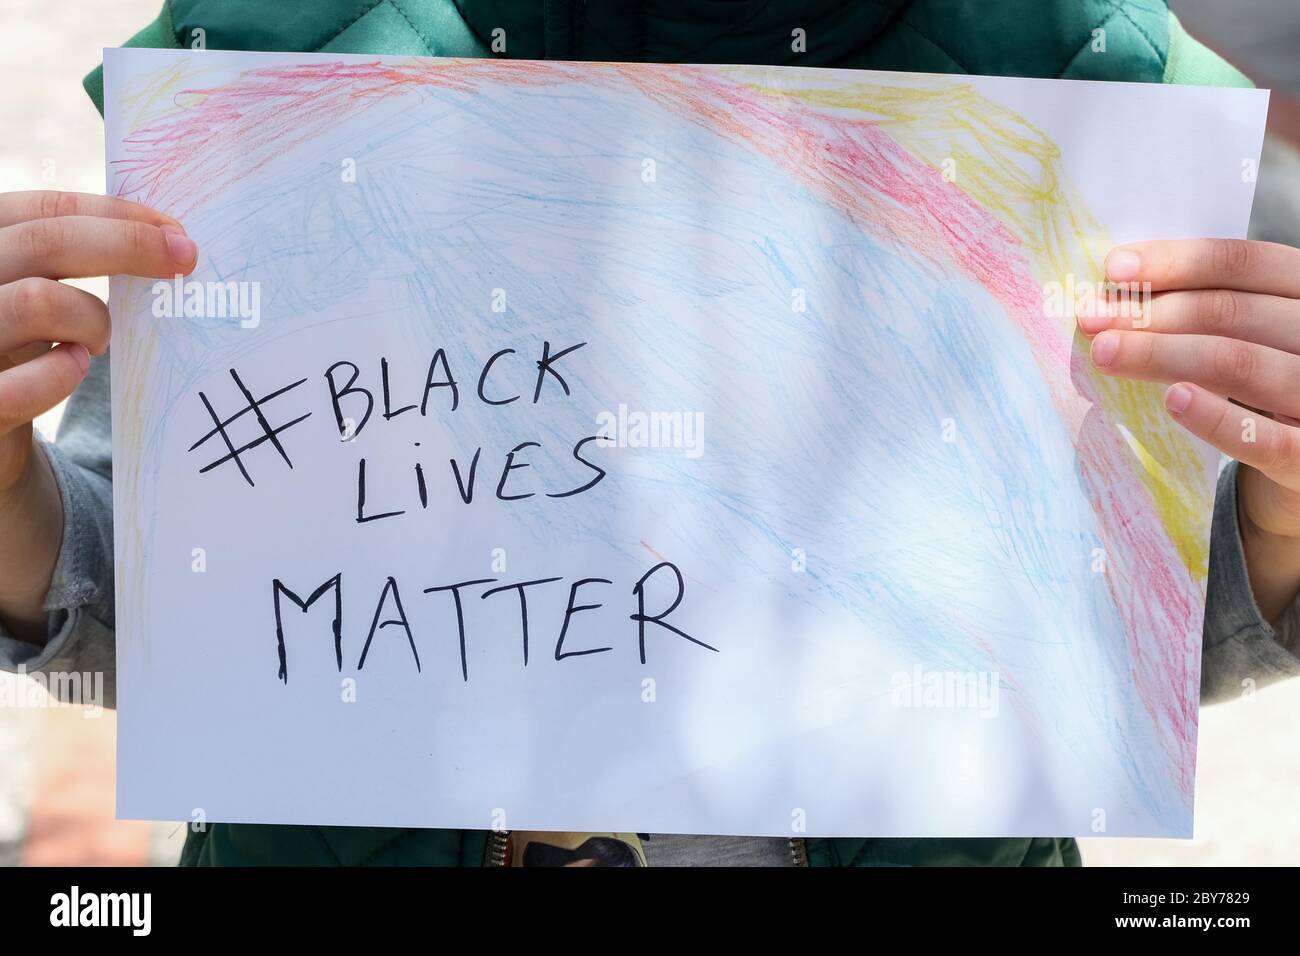 Bambino ragazzo tenere un disegno di vernice per sostenere le vite nere materia di protesta in usa, nessun razzismo Foto Stock